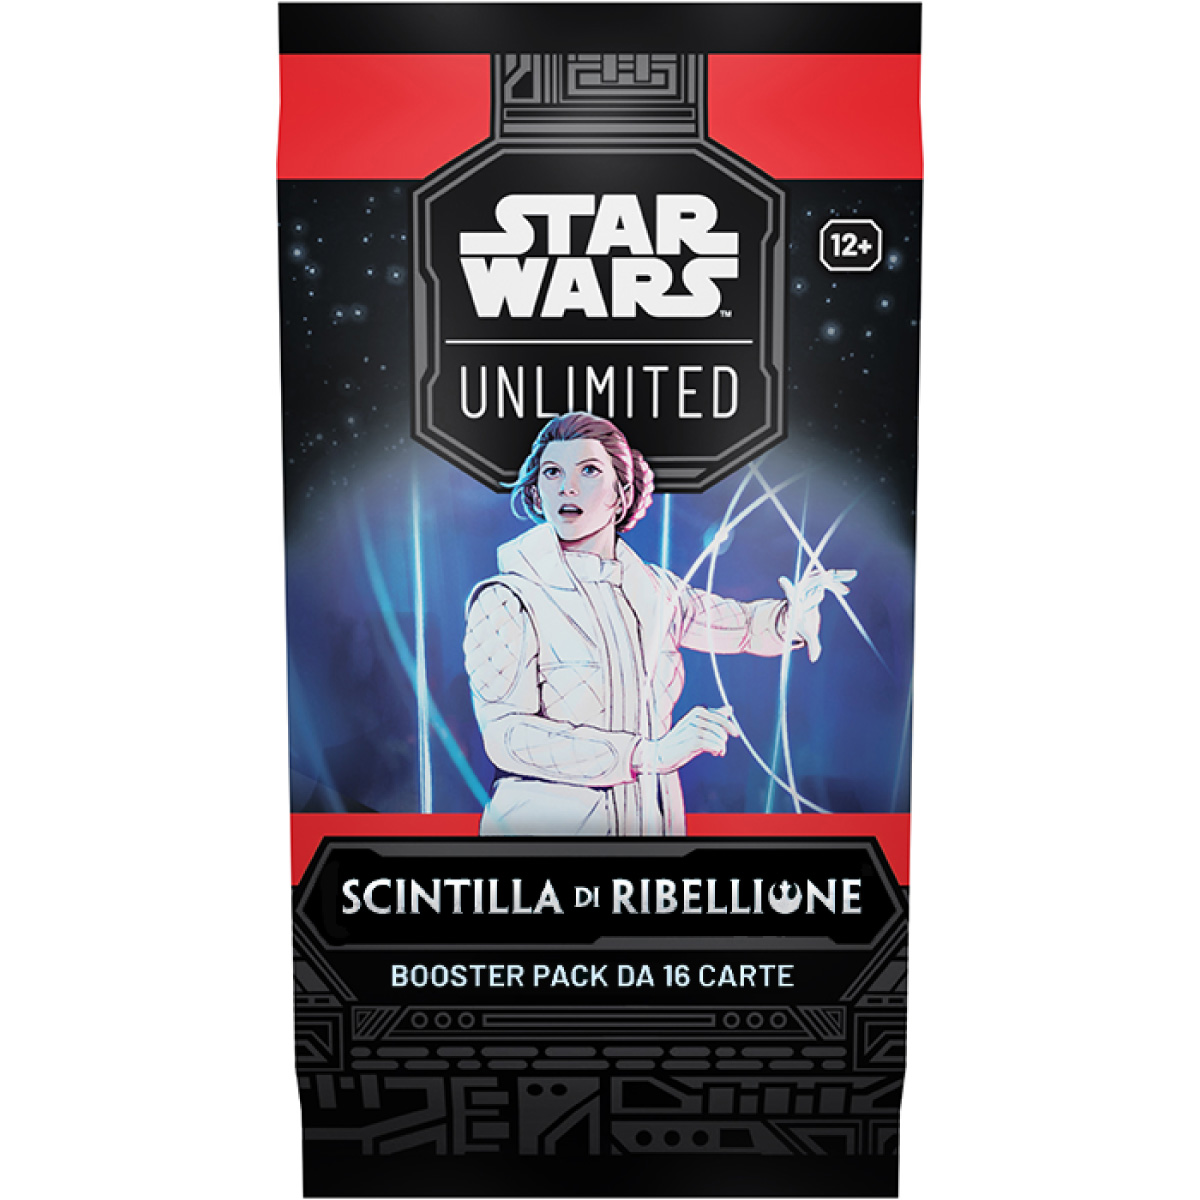 star wars unlimited - scintilla di ribellione - box 24 buste (ita)